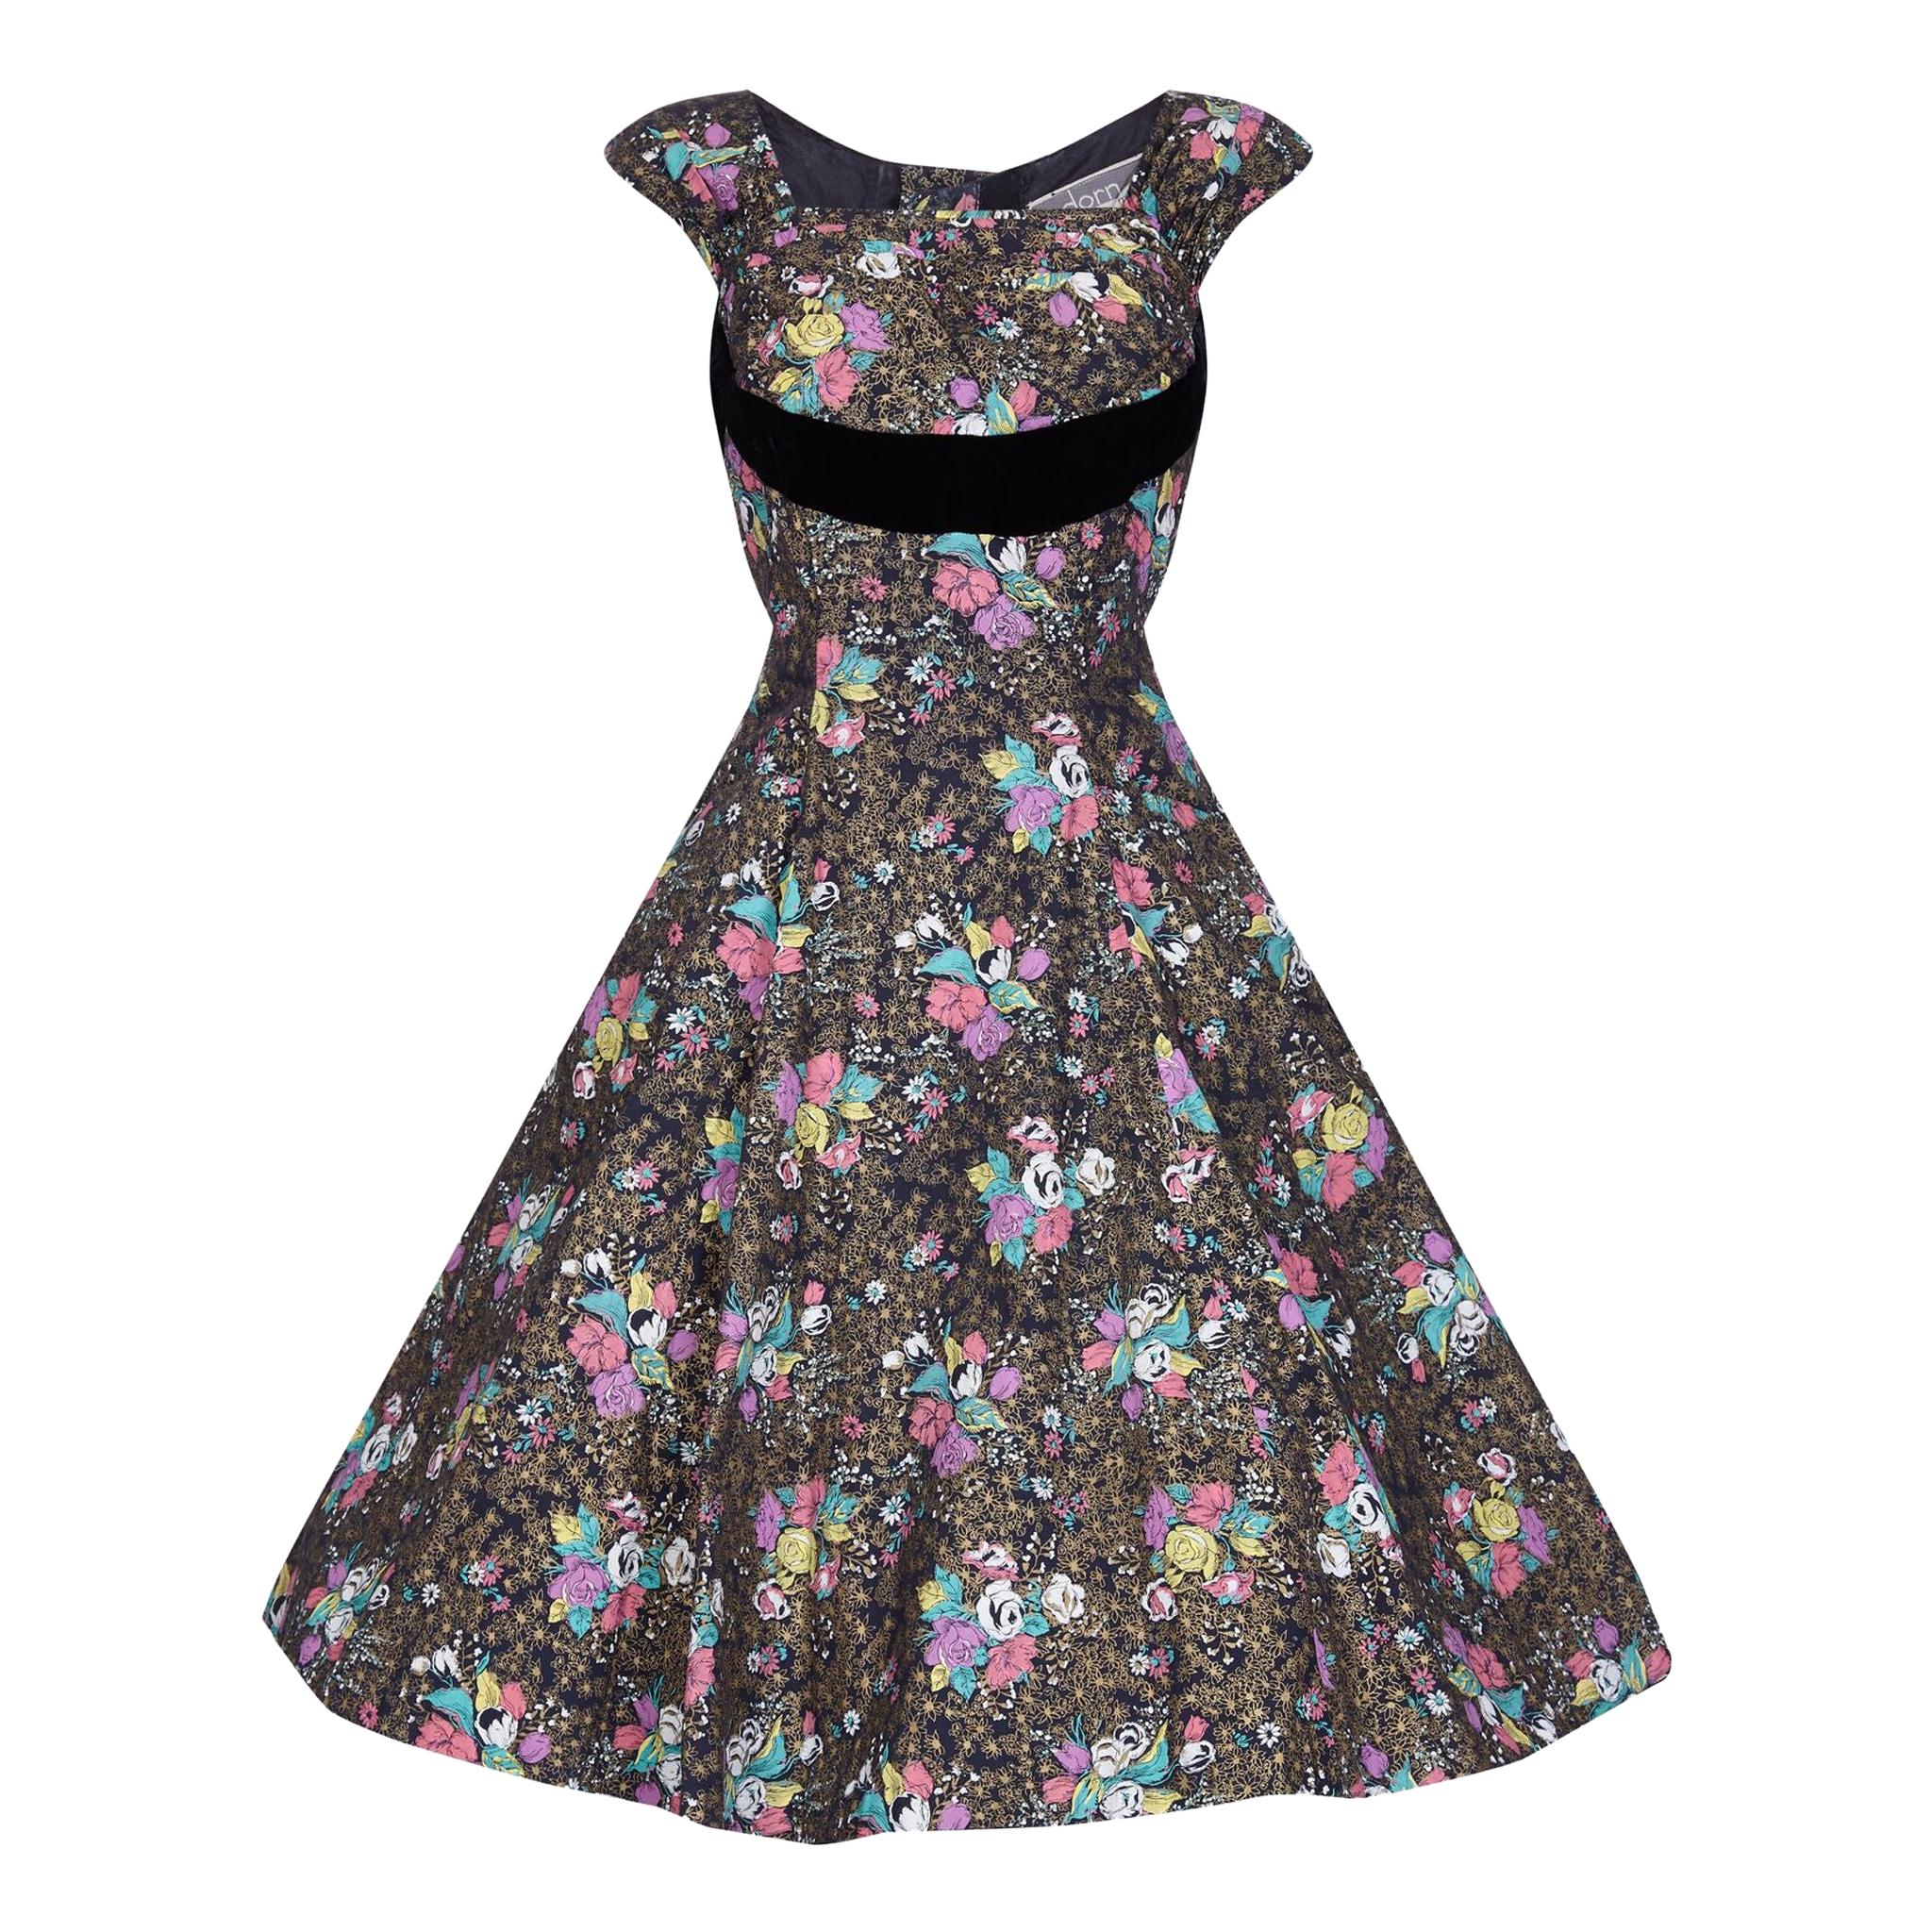 1950s A Dorn Model Rose Print Cotton Dress With Black Velvet Bow